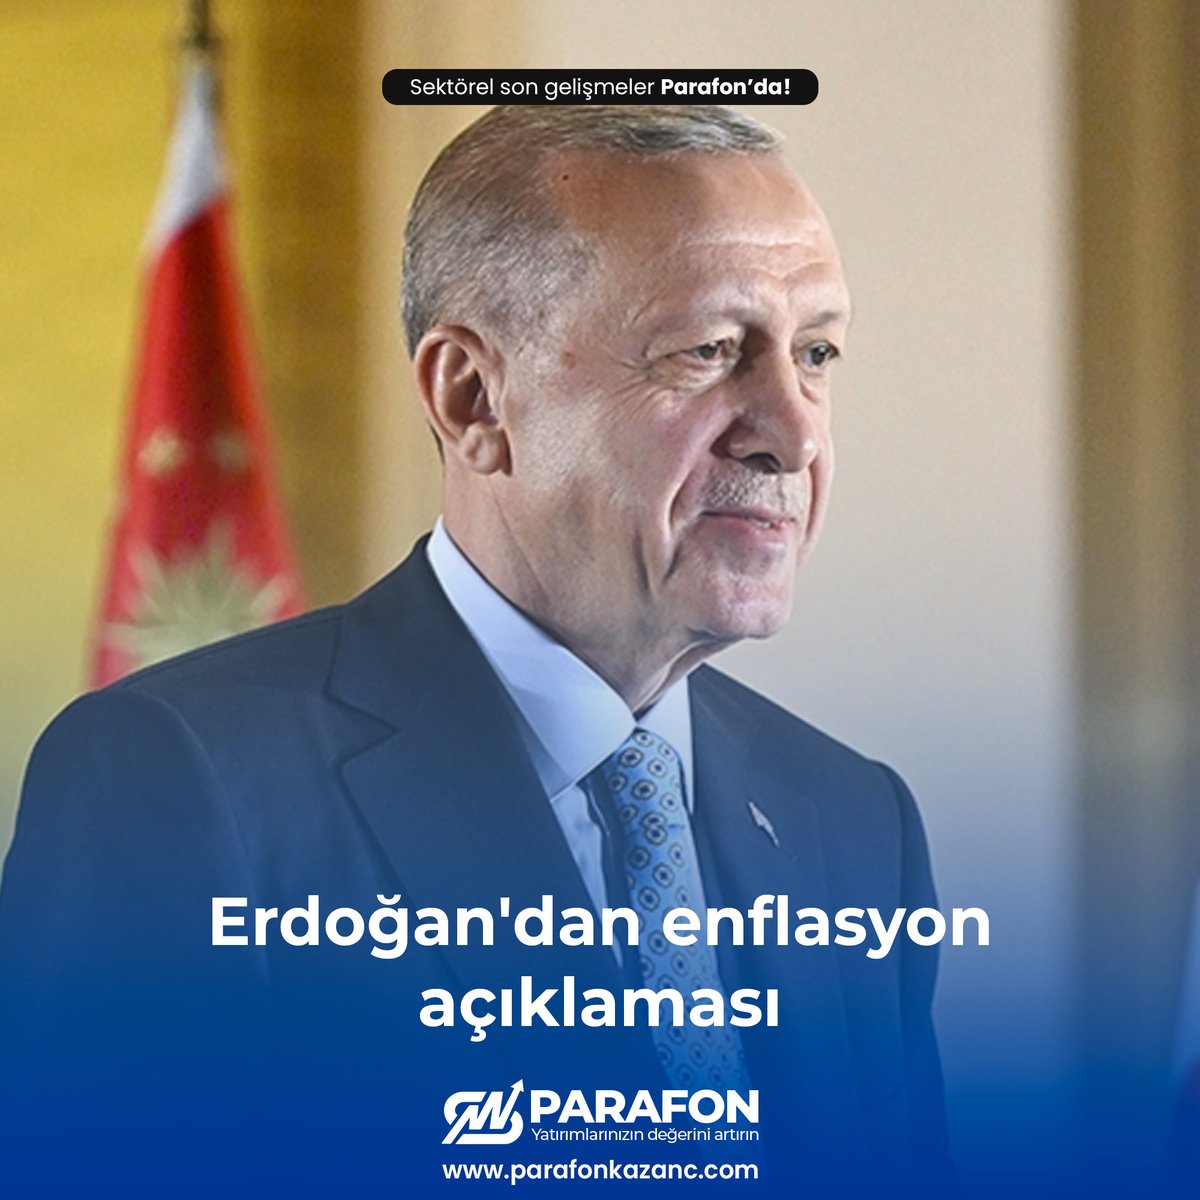 Cumhurbaşkanı Recep Tayyip Erdoğan, “Yeni yol ve yöntemlerle enflasyonun ve yol açtığı sorunların üstesinden gelecek bir program uyguluyoruz” dedi. #erdoğan #enflasyon #Cumhurbaşkanı